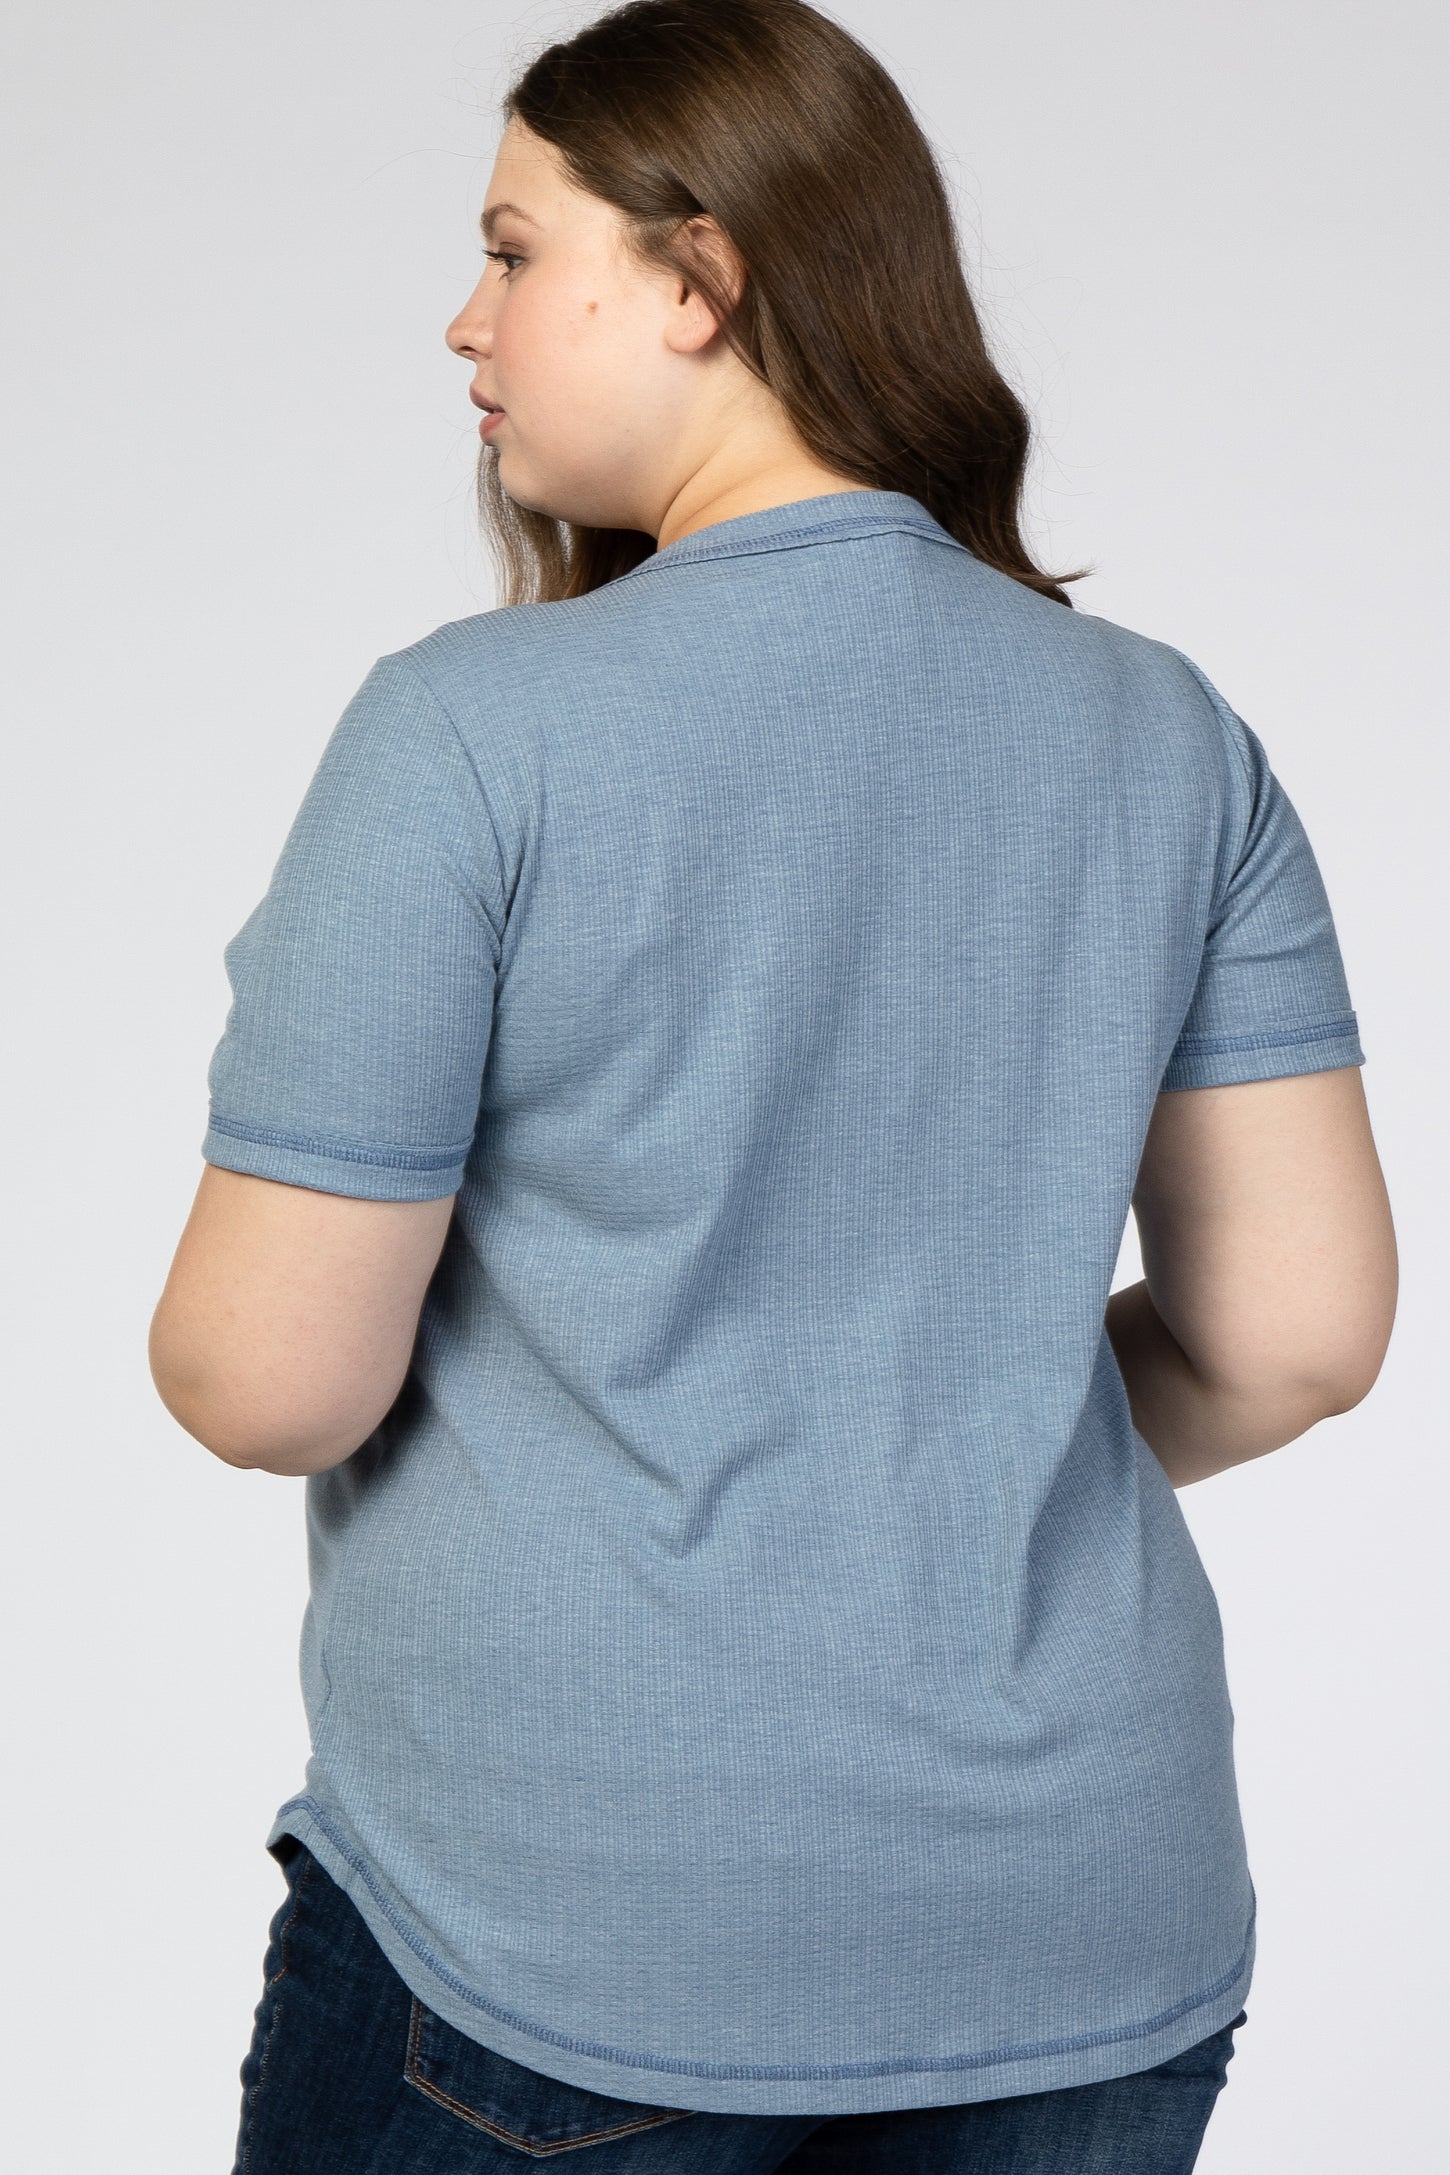 Blue Button Front Maternity Plus T Shirt